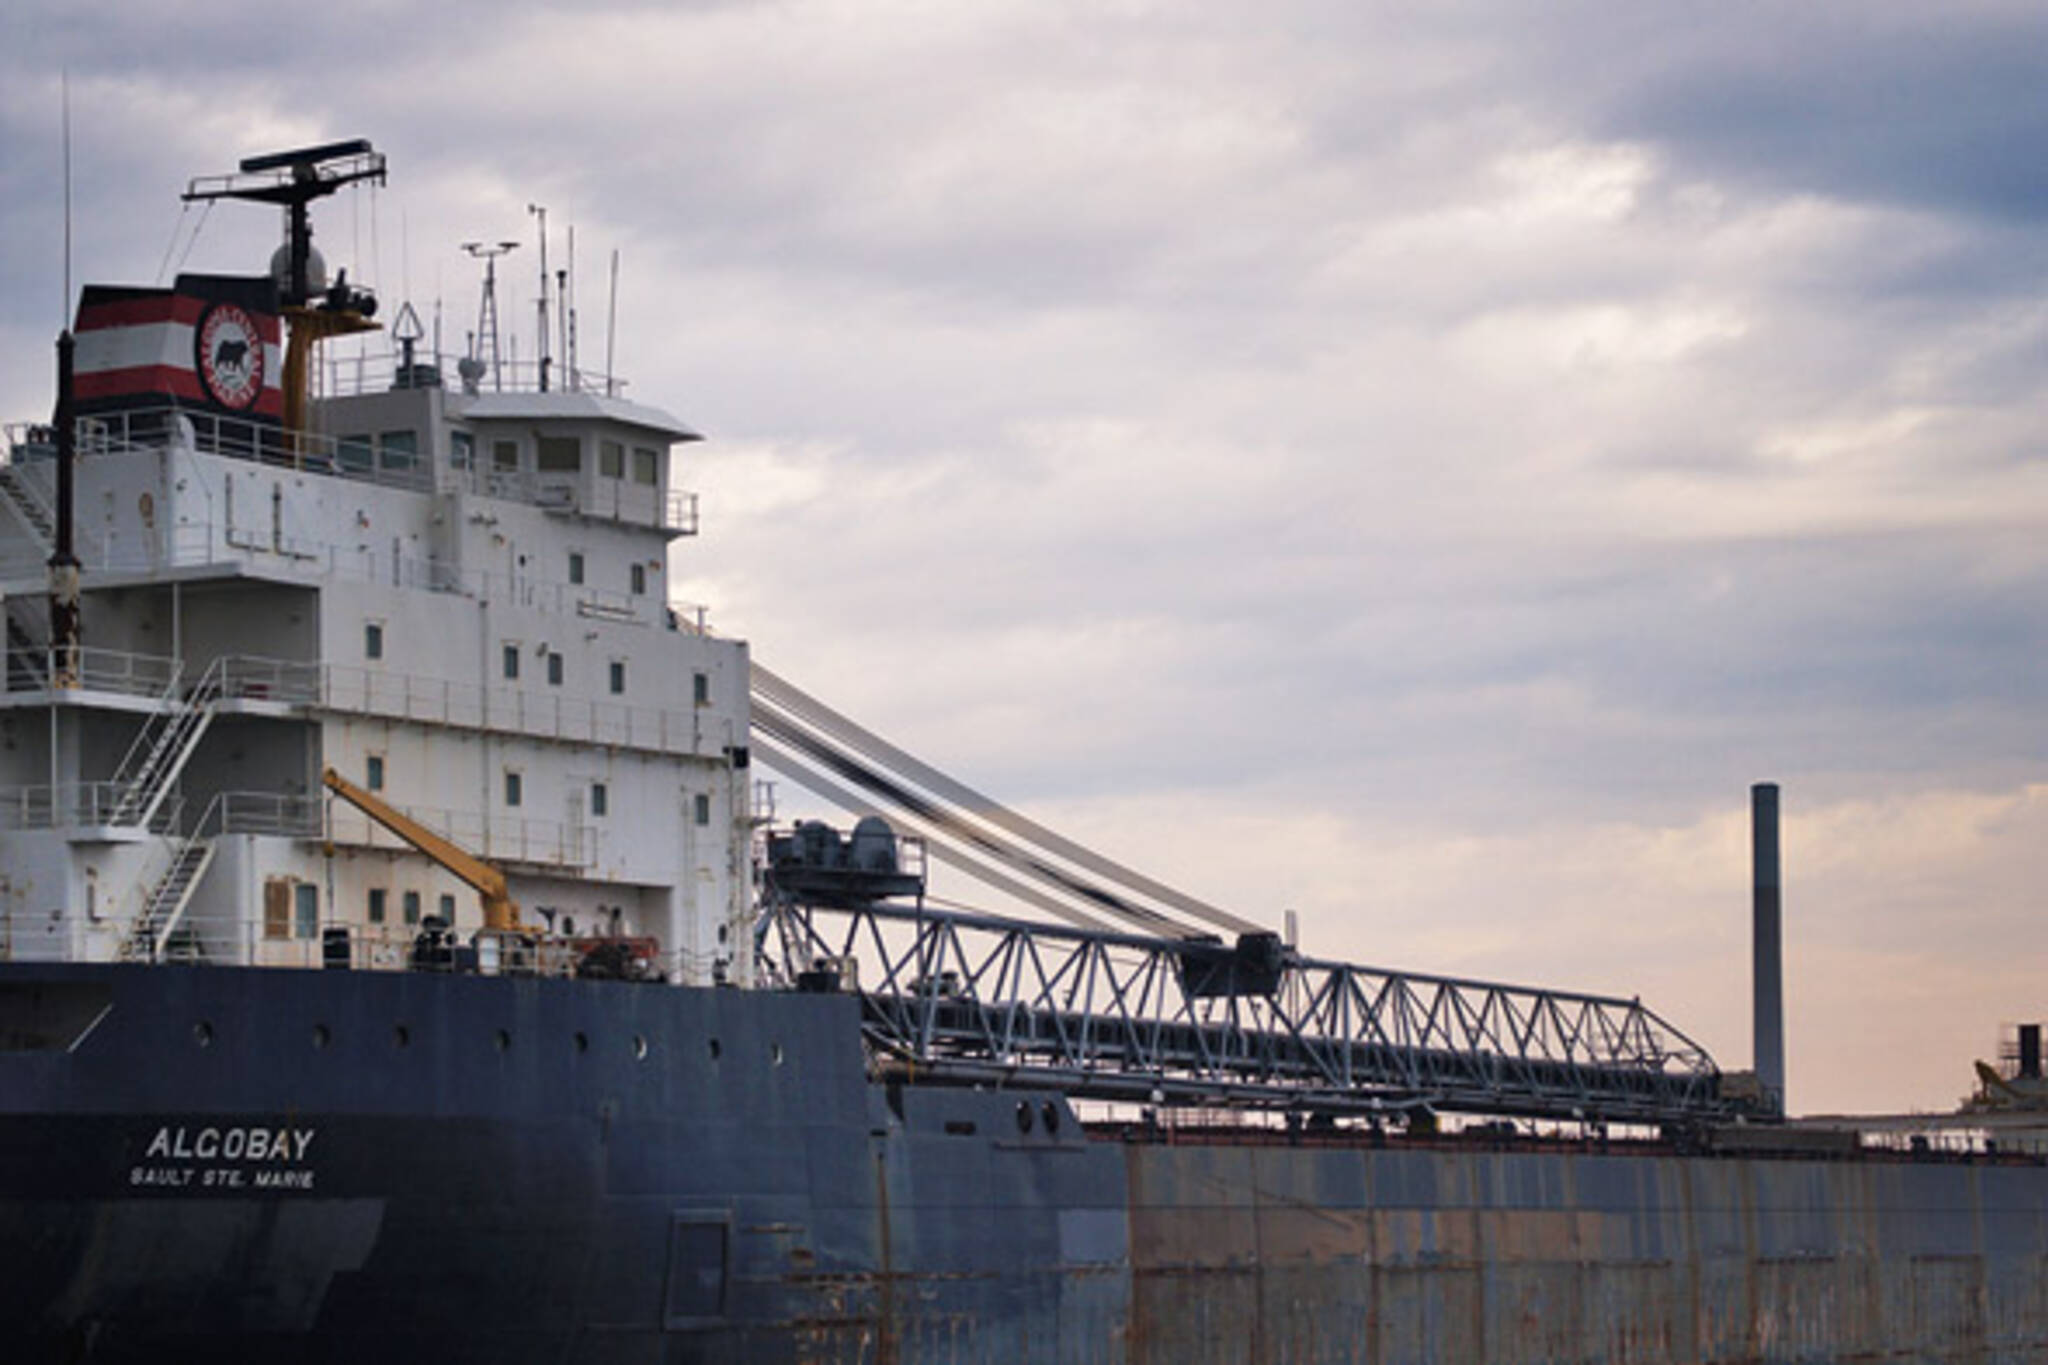 Algobay docked in Toronto Portlands